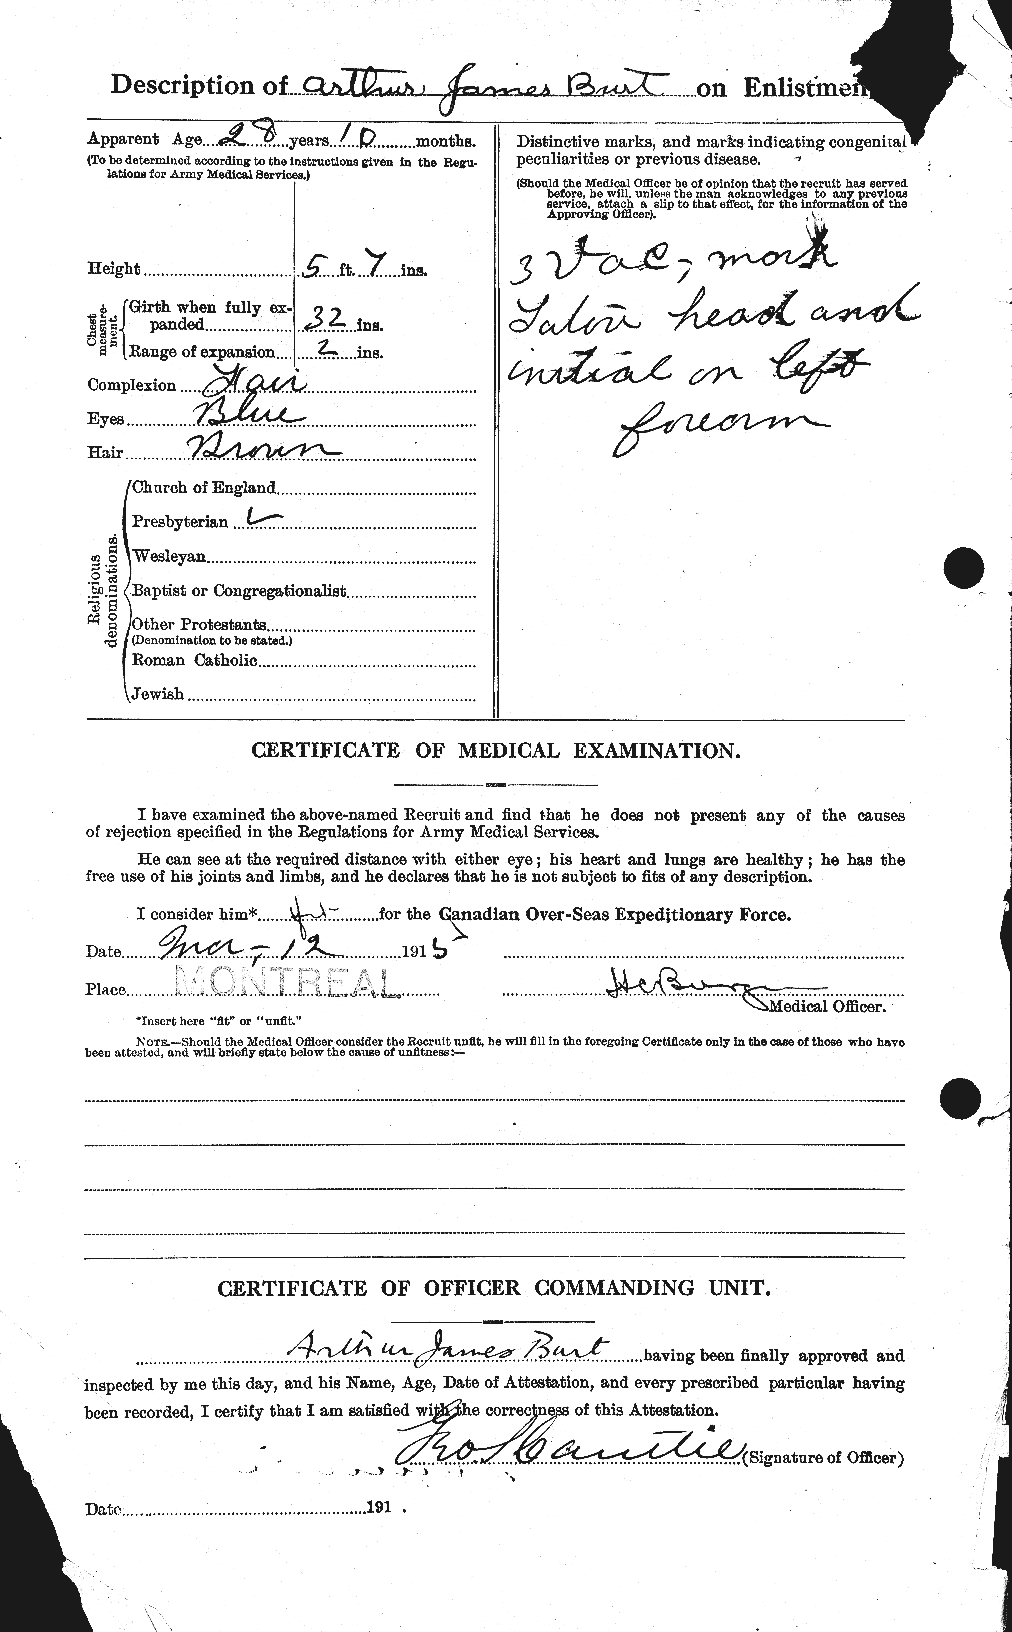 Dossiers du Personnel de la Première Guerre mondiale - CEC 274975b